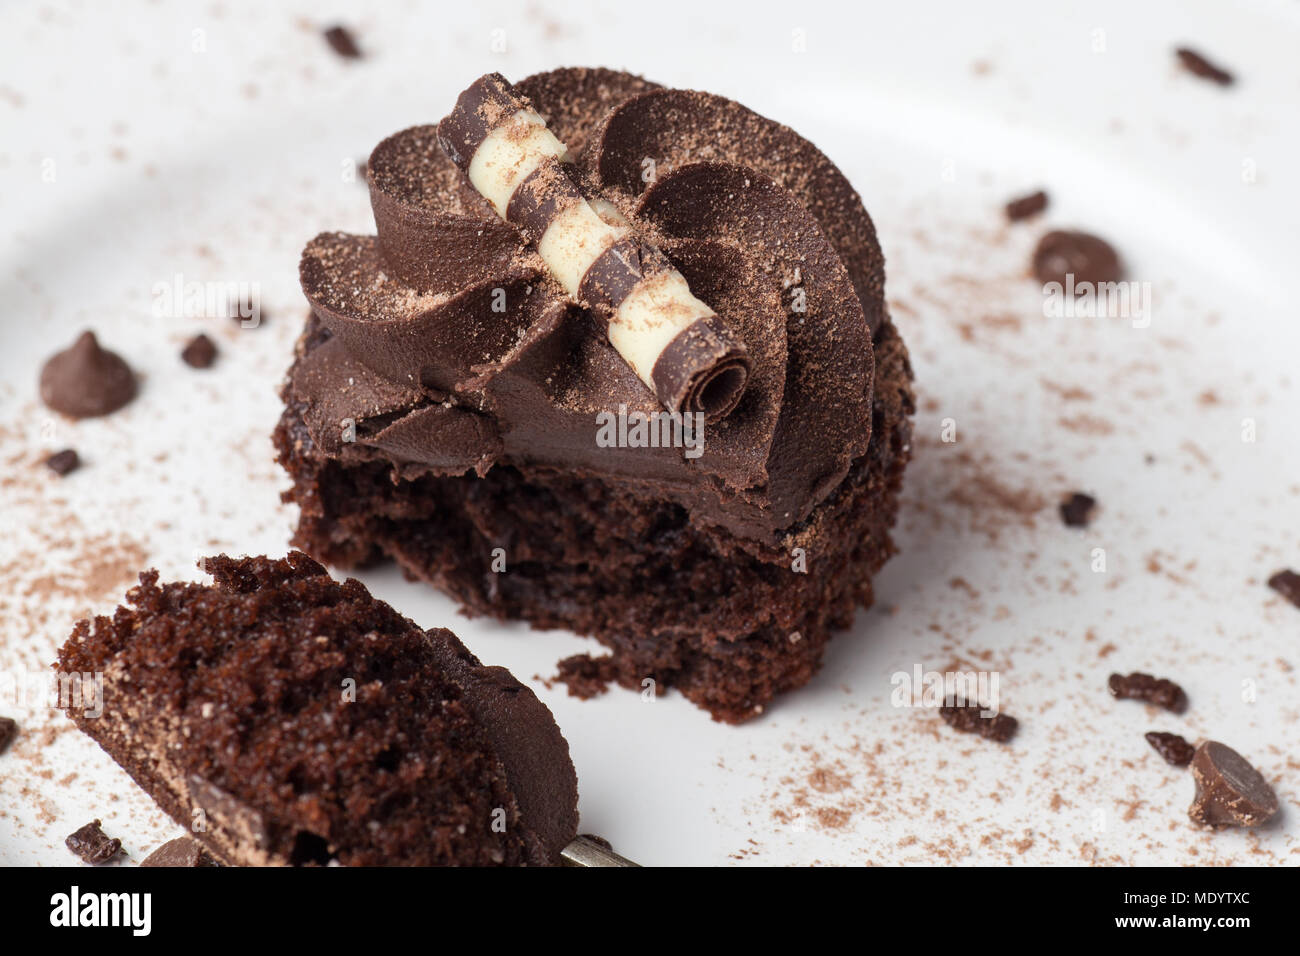 Chocolate Cupcake auf weißer Teller mit Gabel, bestäubt mit Kakao und Schokolade besprüht, die Hälfte gegessen Stockfoto